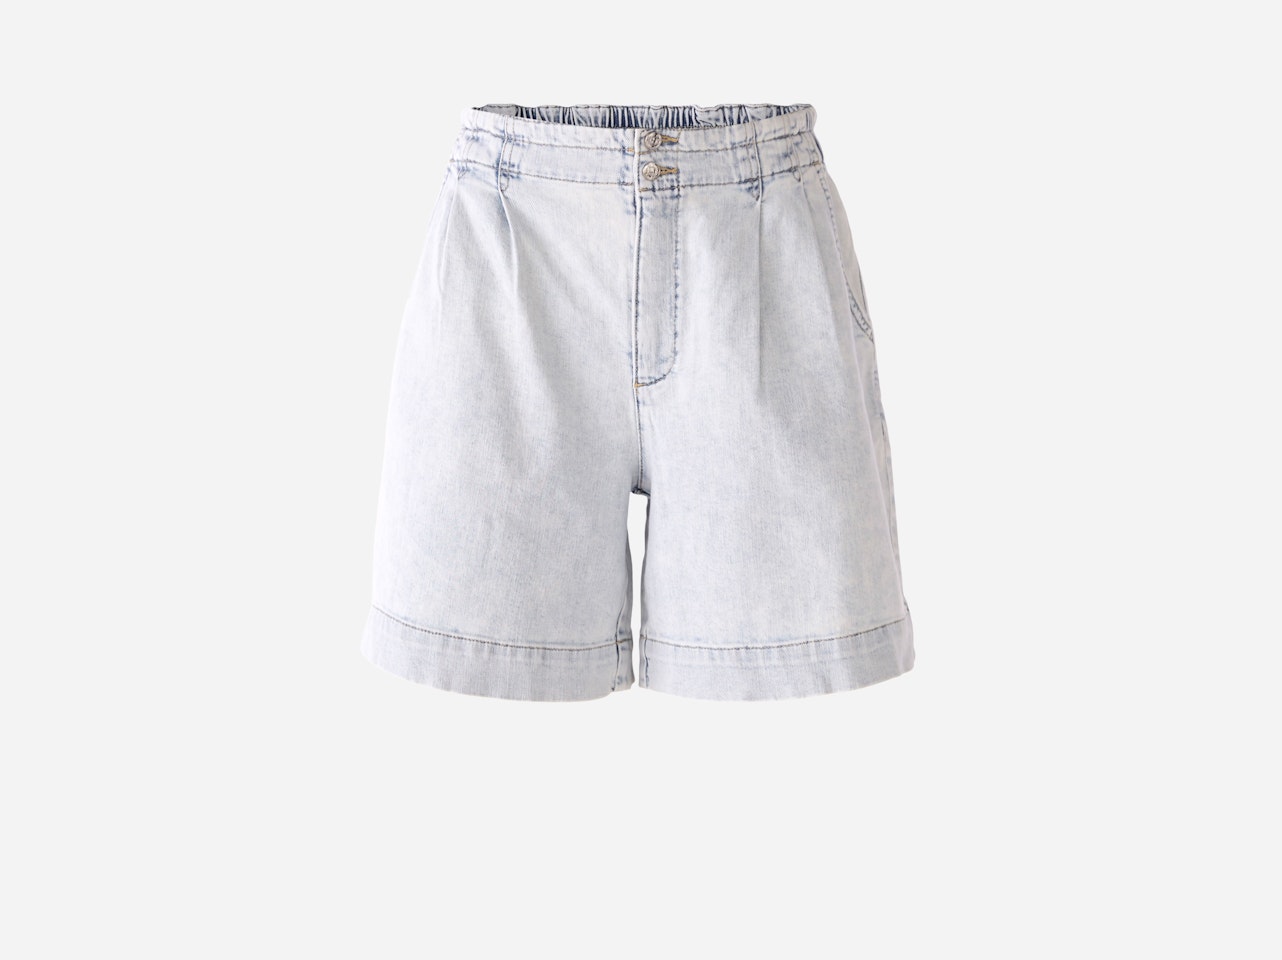 Bild 7 von Jeans shorts cotton stretch in lt blue denim | Oui